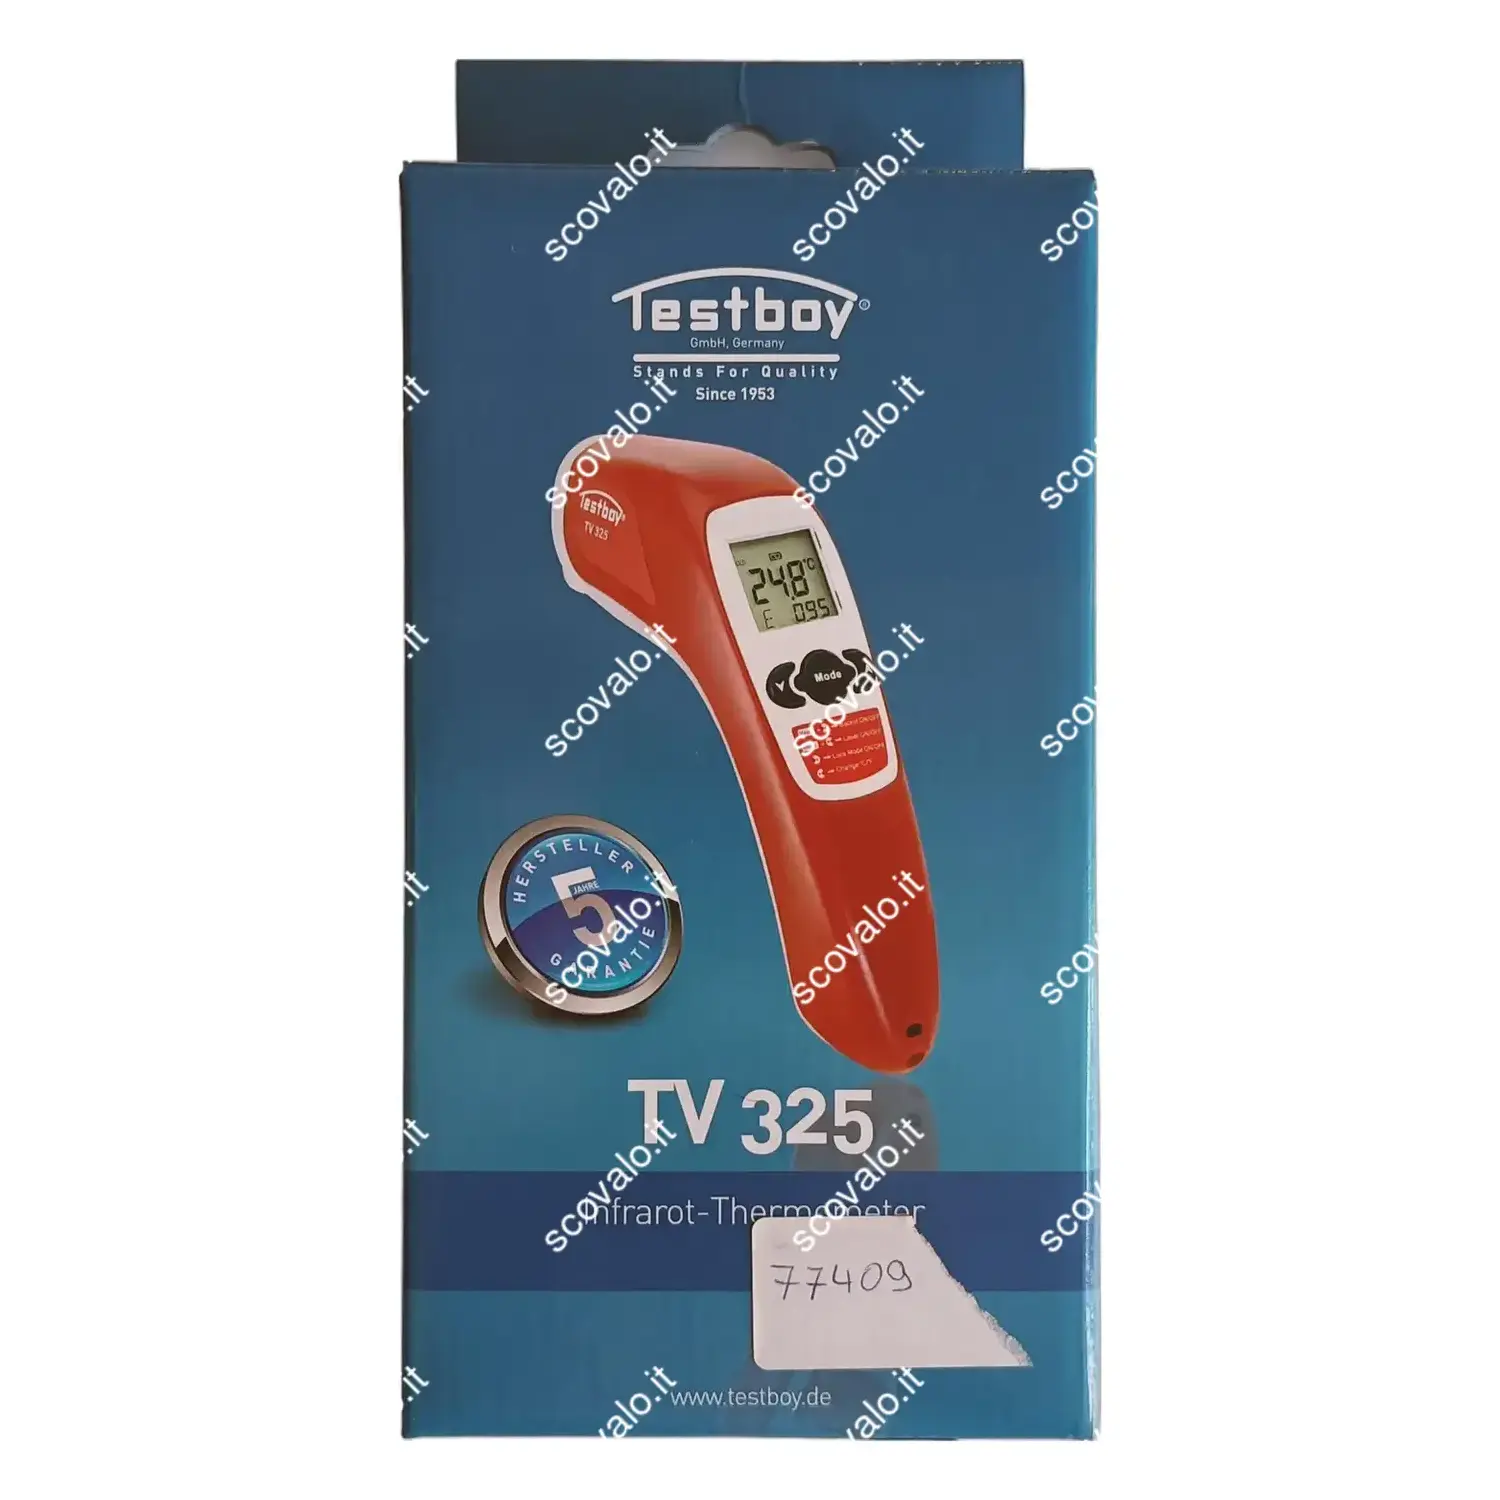 immagine termometro infrarossi pistola frontale testboy tv 325 con sondino